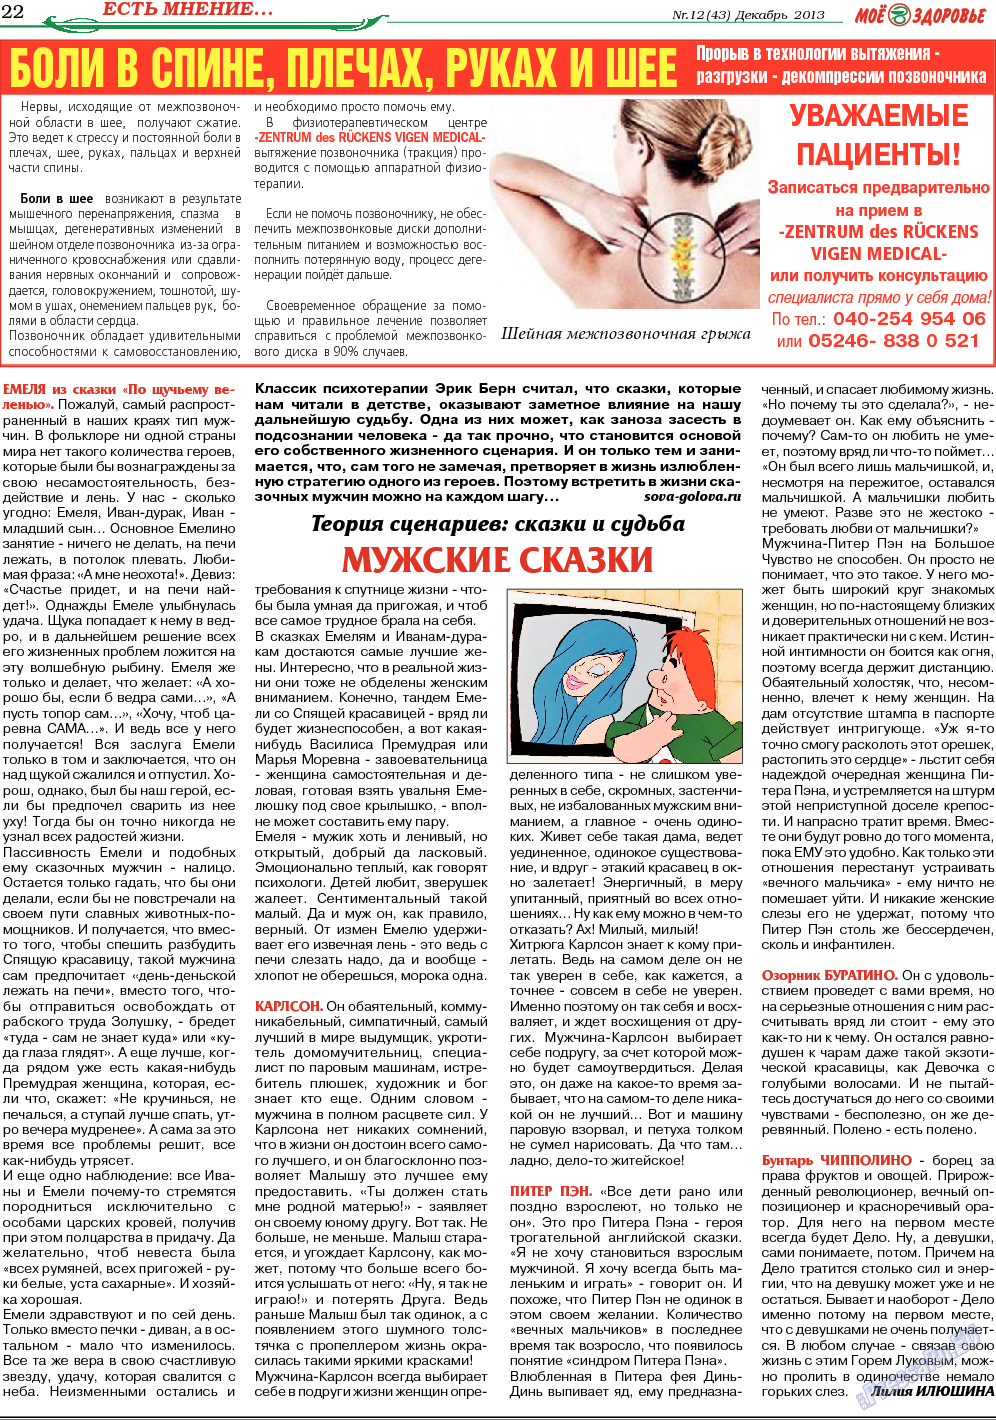 Кругозор, газета. 2013 №12 стр.22